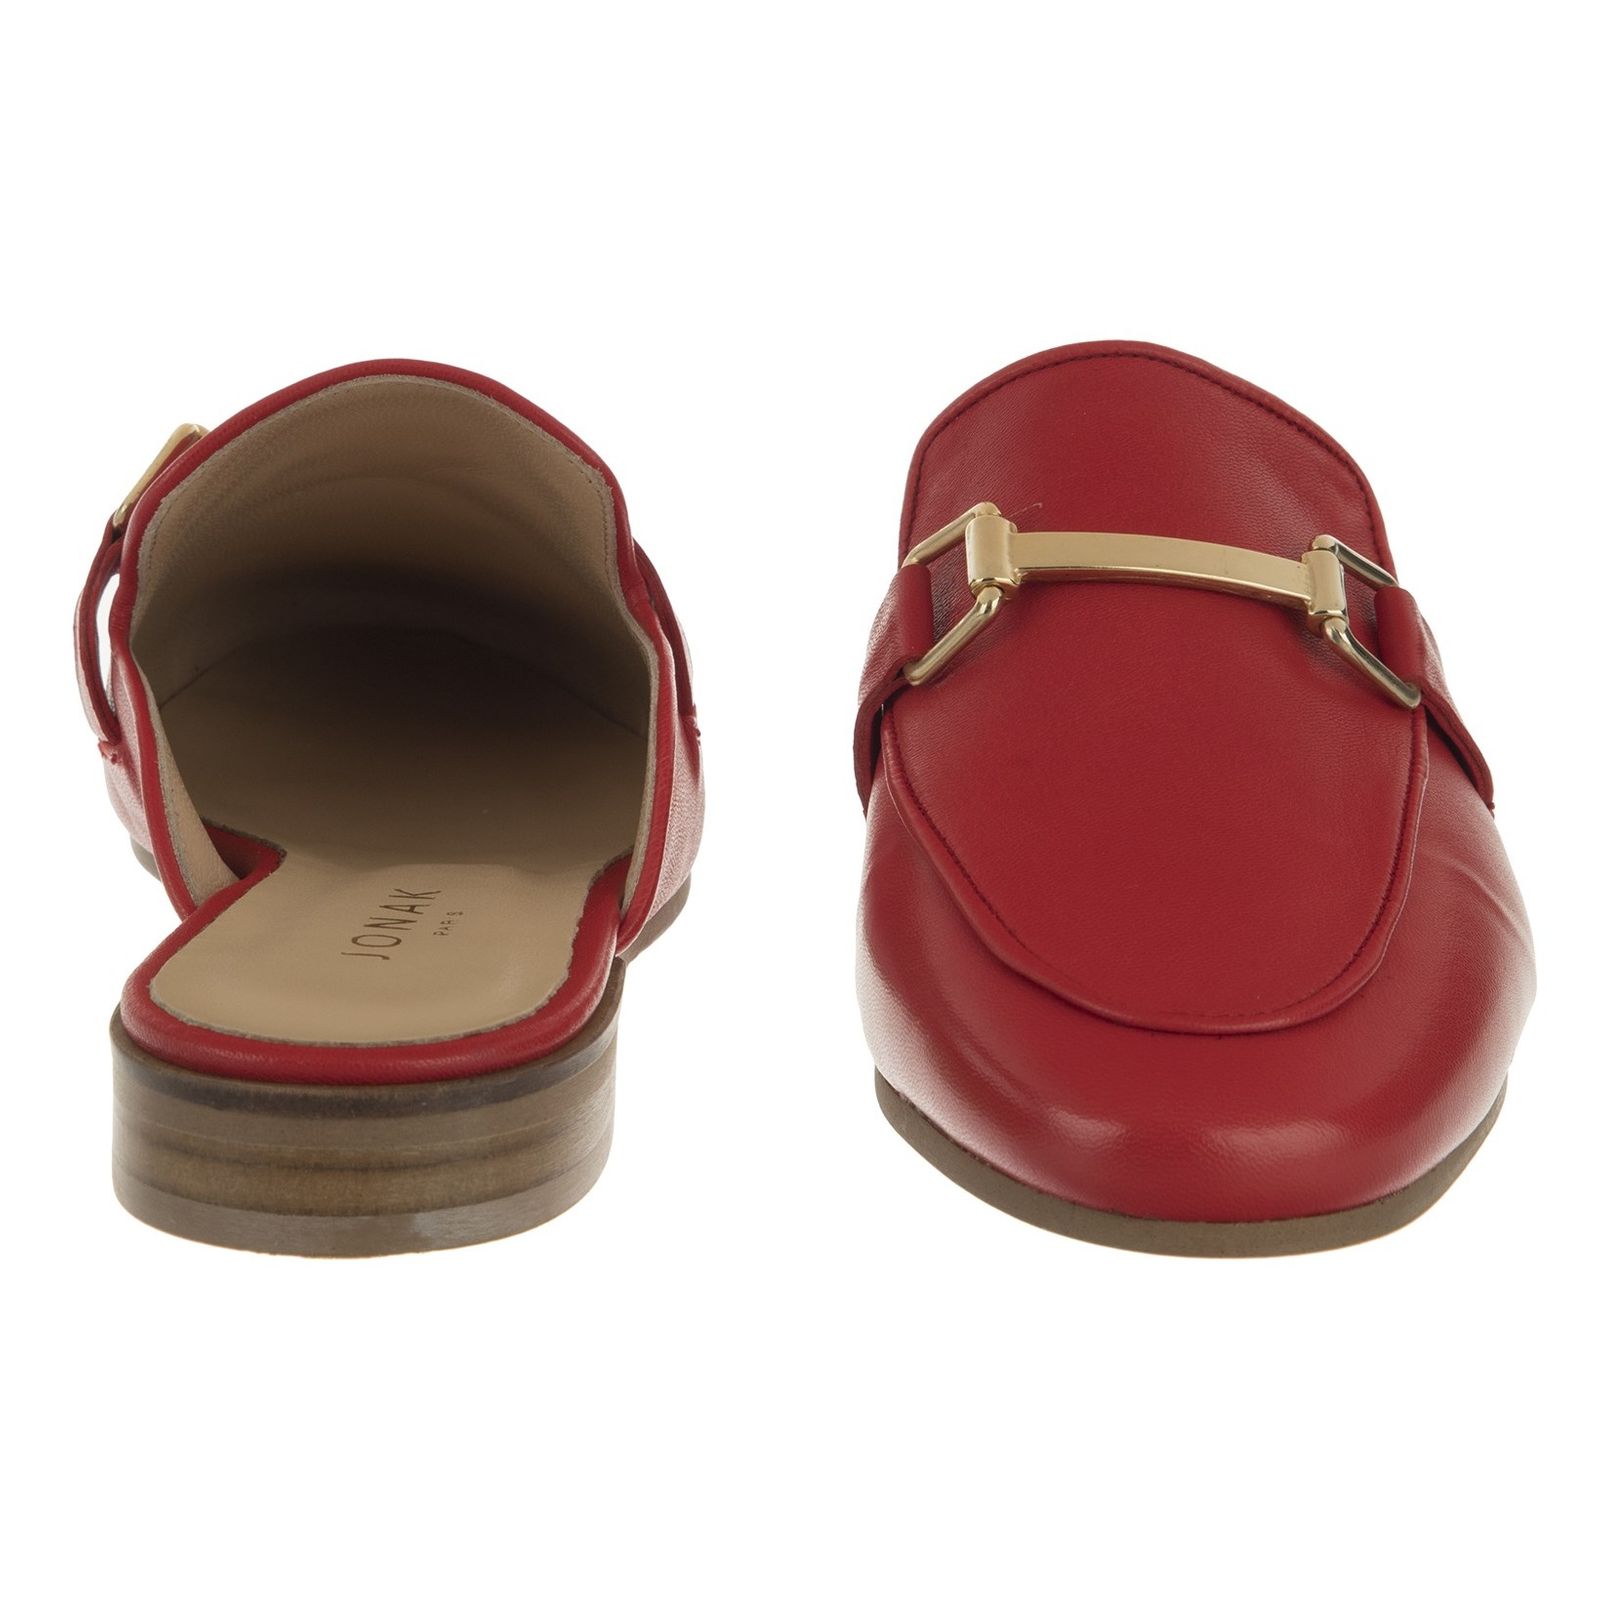 کفش تخت چرم زنانه - ژوناک - قرمز - 6